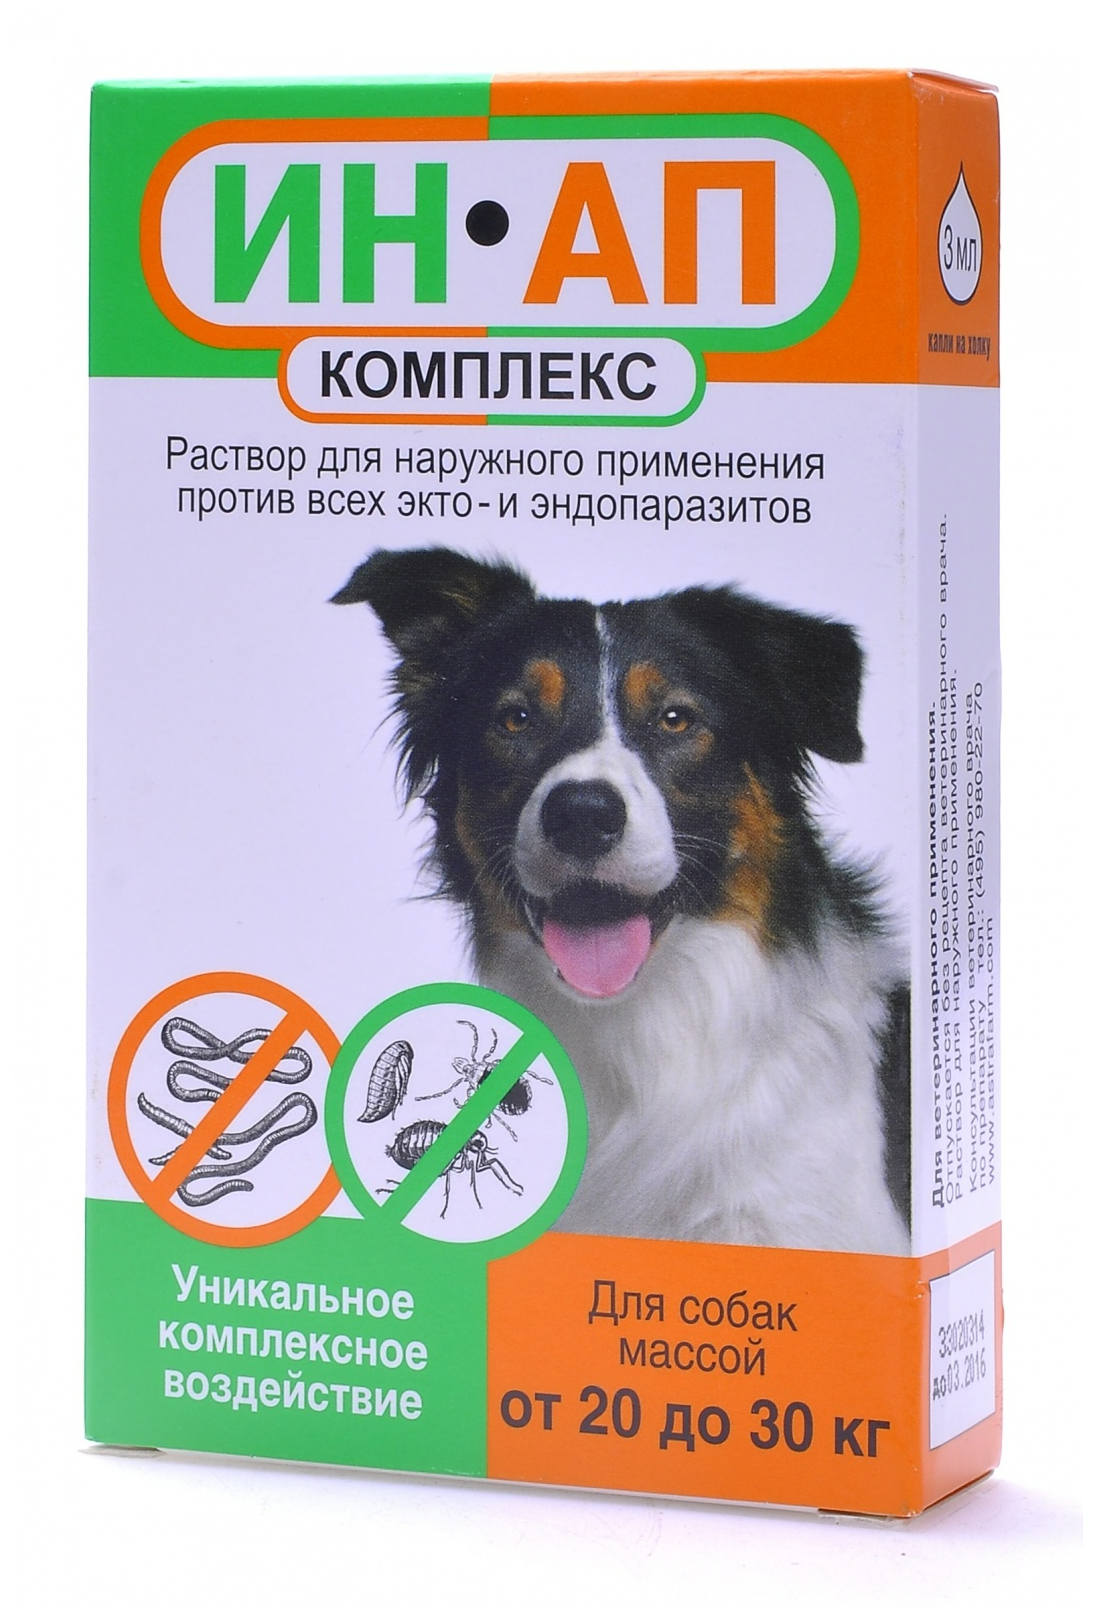 Астрафарм  Капли против экто- и эндопаразитов ИН-АП для собак массой от 20 до 30 кг 1 шт. в уп., 1 уп.